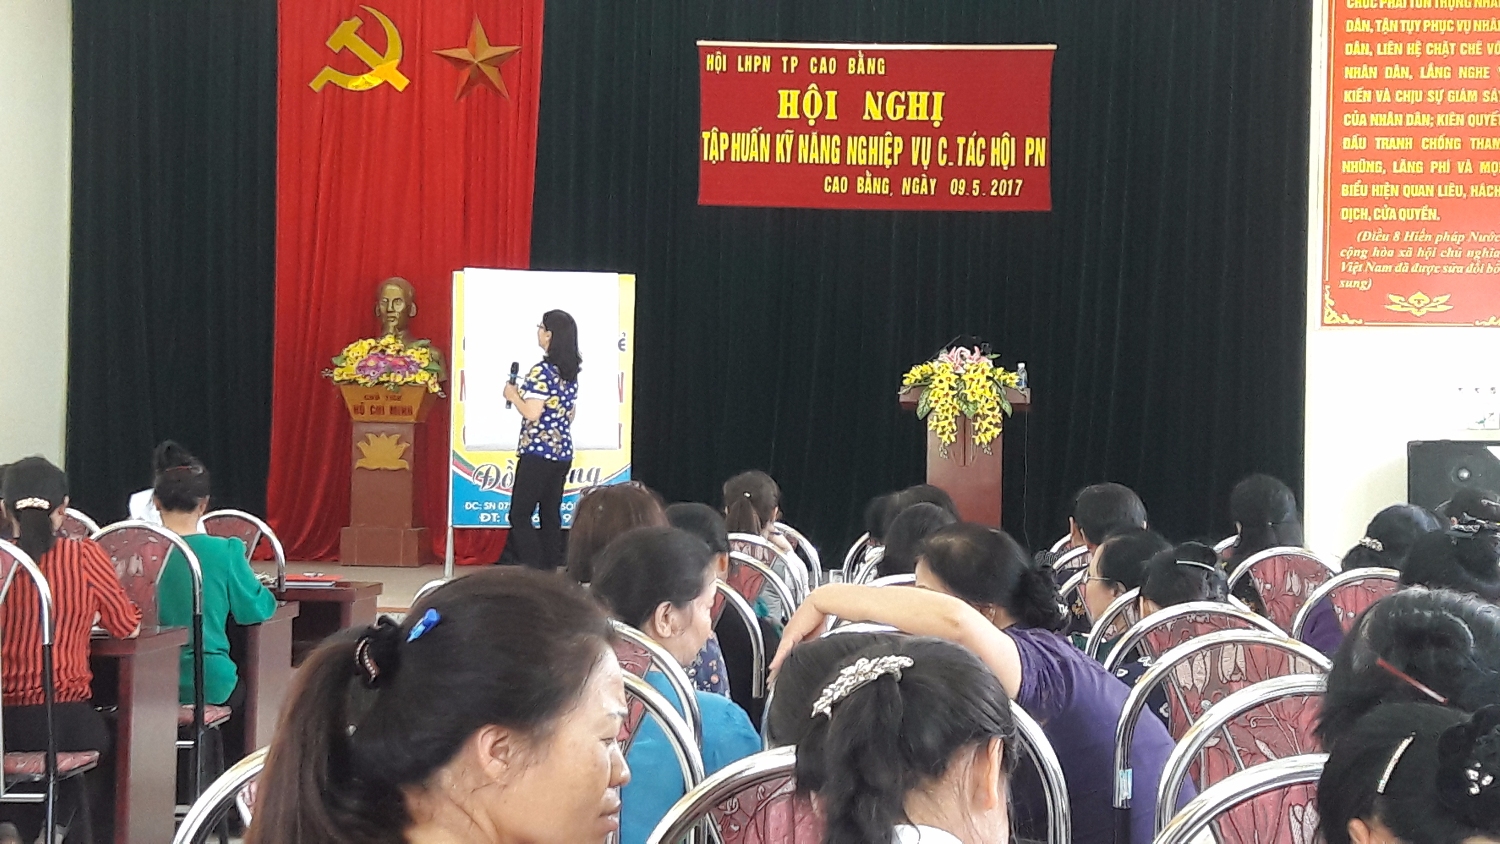 Đ/c Nông Thị Duyên - Chủ tịch Hội LHPN Thành phố Cao Bằng lên lớp tại buổi tập huấn